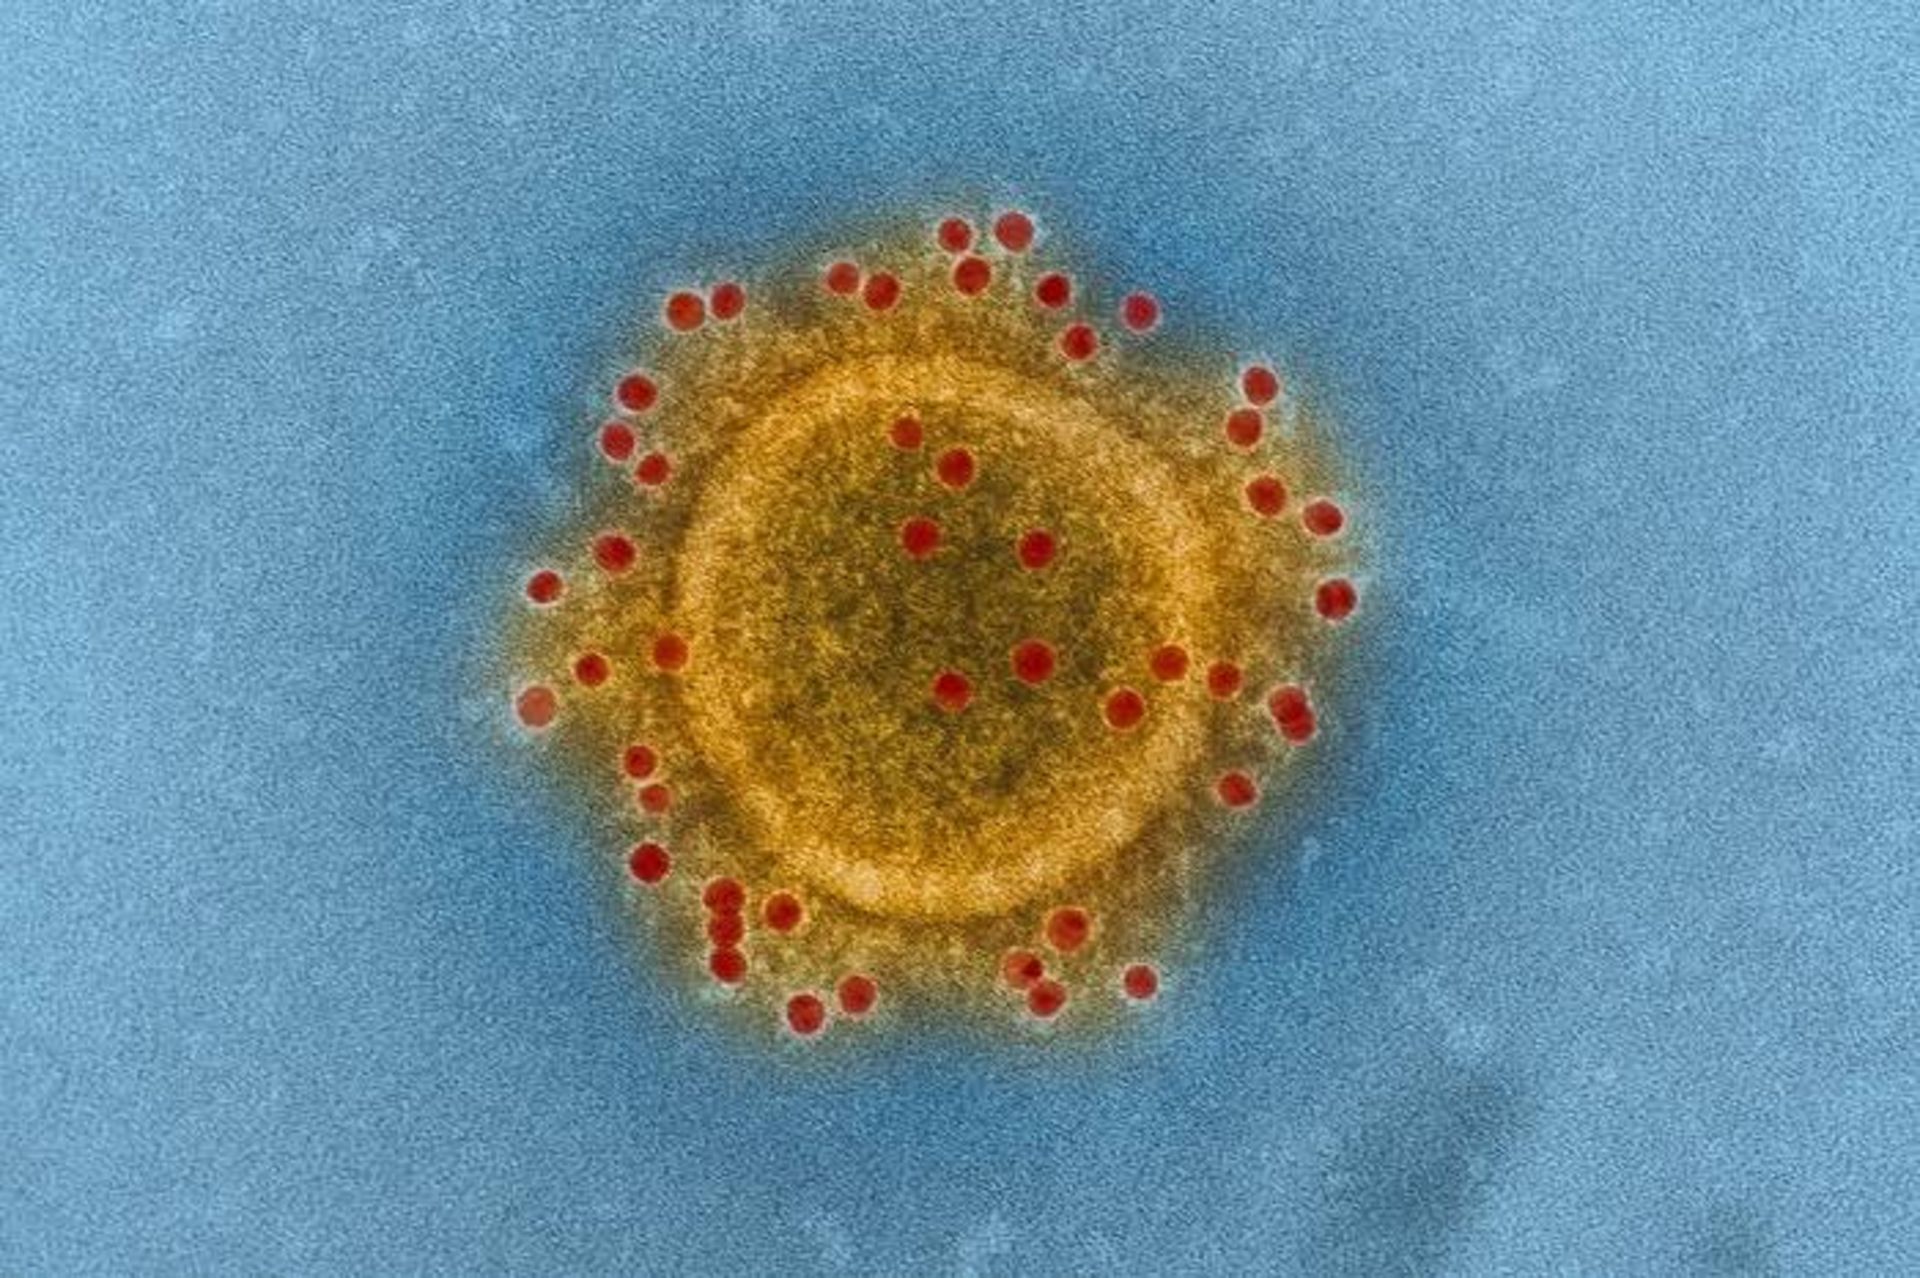 ویروس مرس / MERS virus